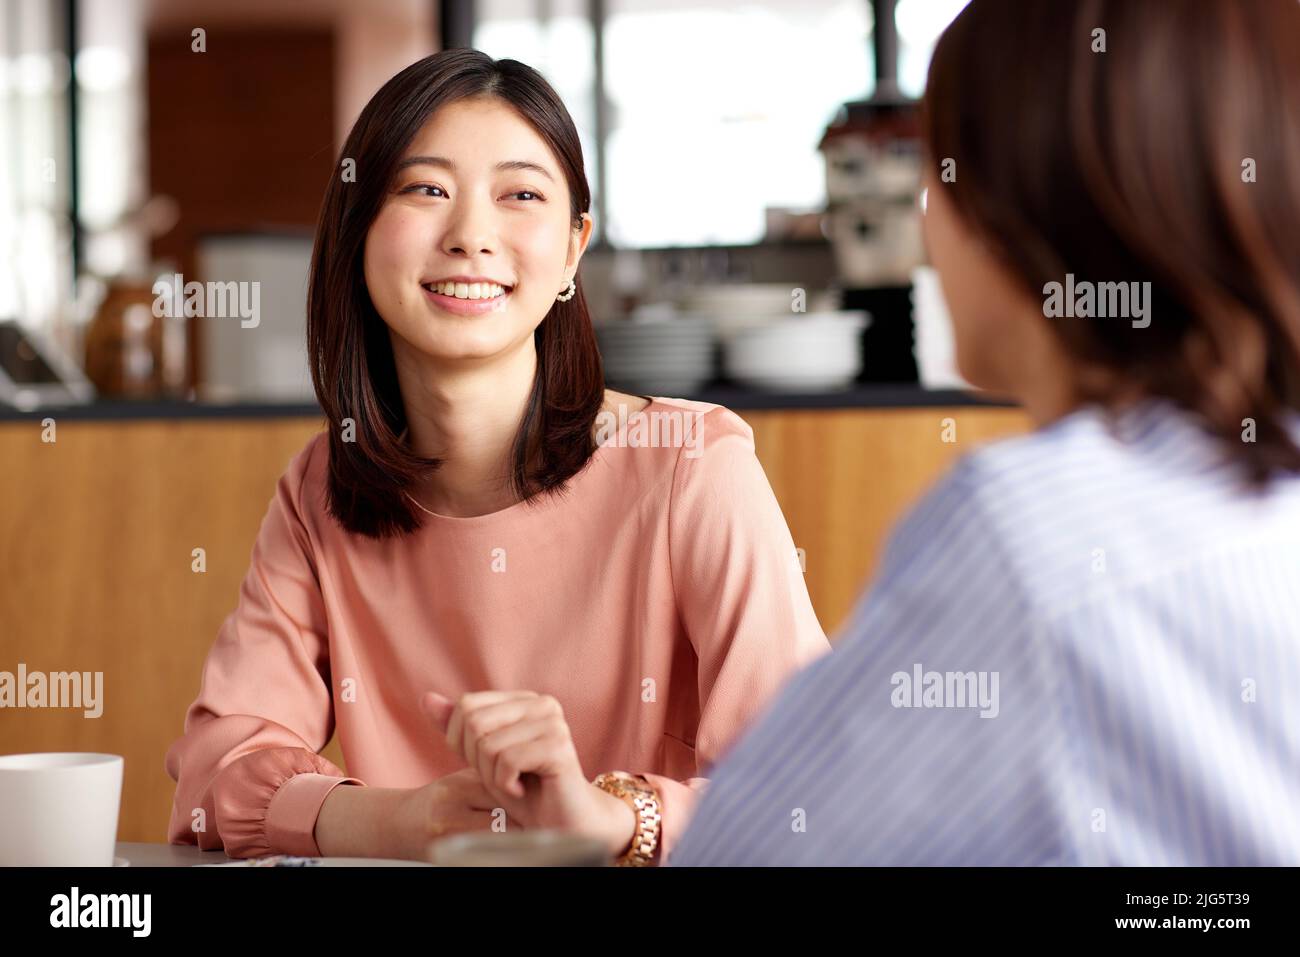 Las mujeres japonesas en un café Foto de stock